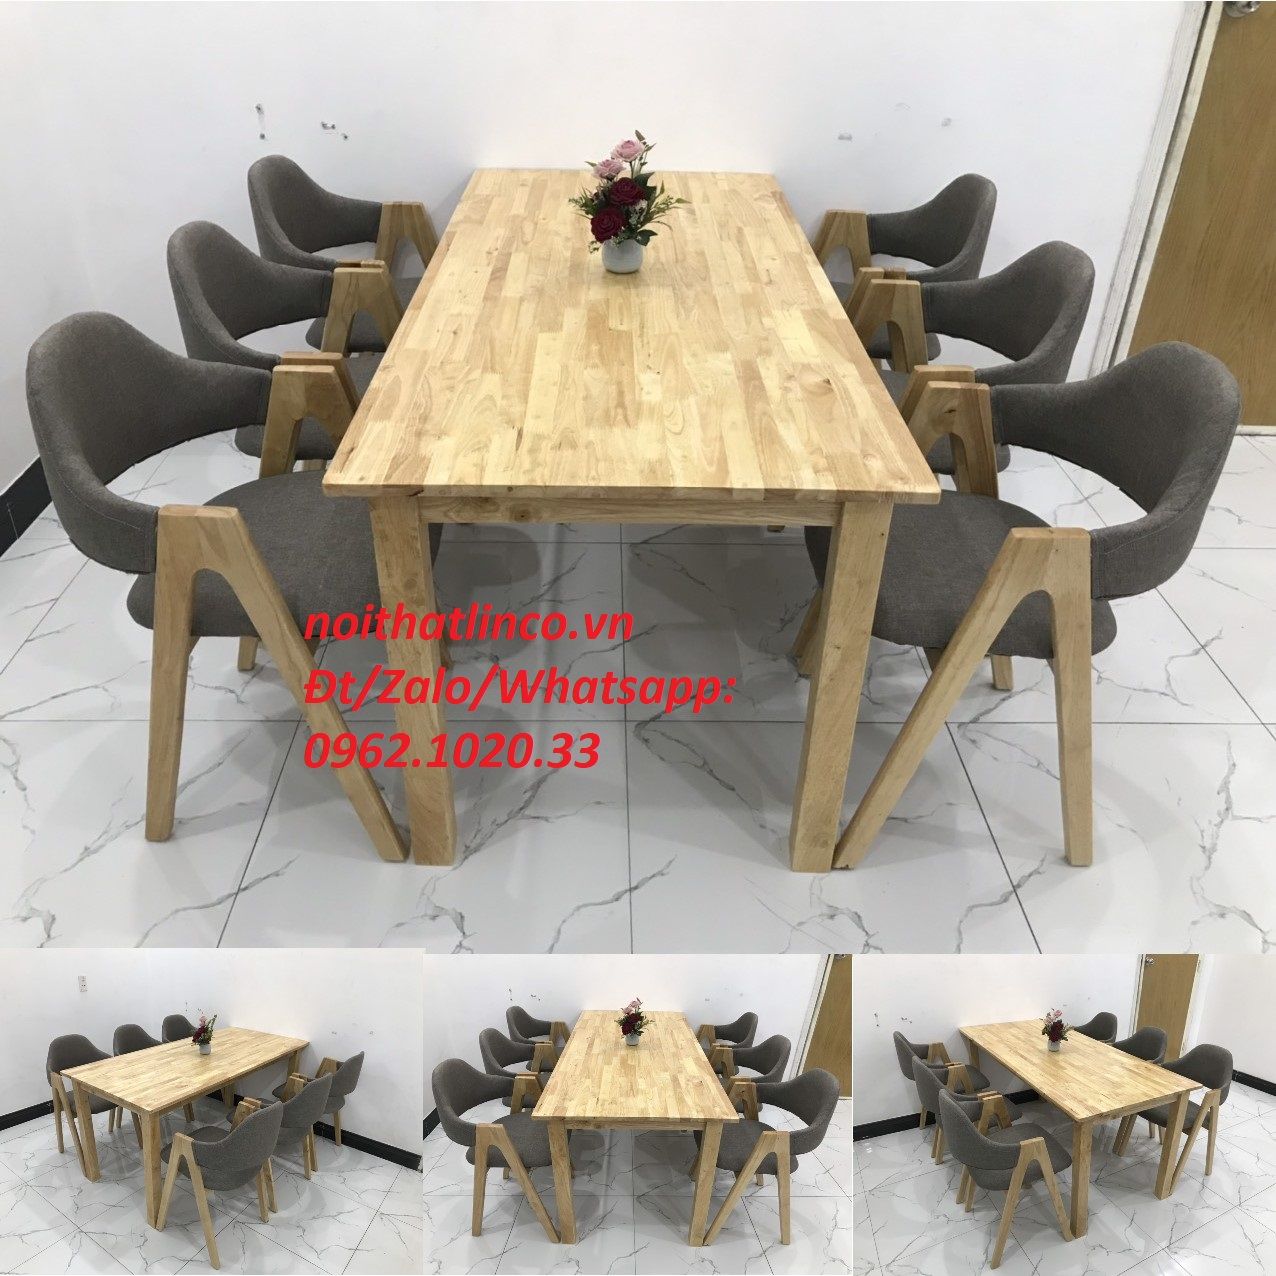  Bộ bàn ăn 6 ghế gỗ tự nhiên giá rẻ đẹp HCM (SG) | Nội Thất Linco tphcm 